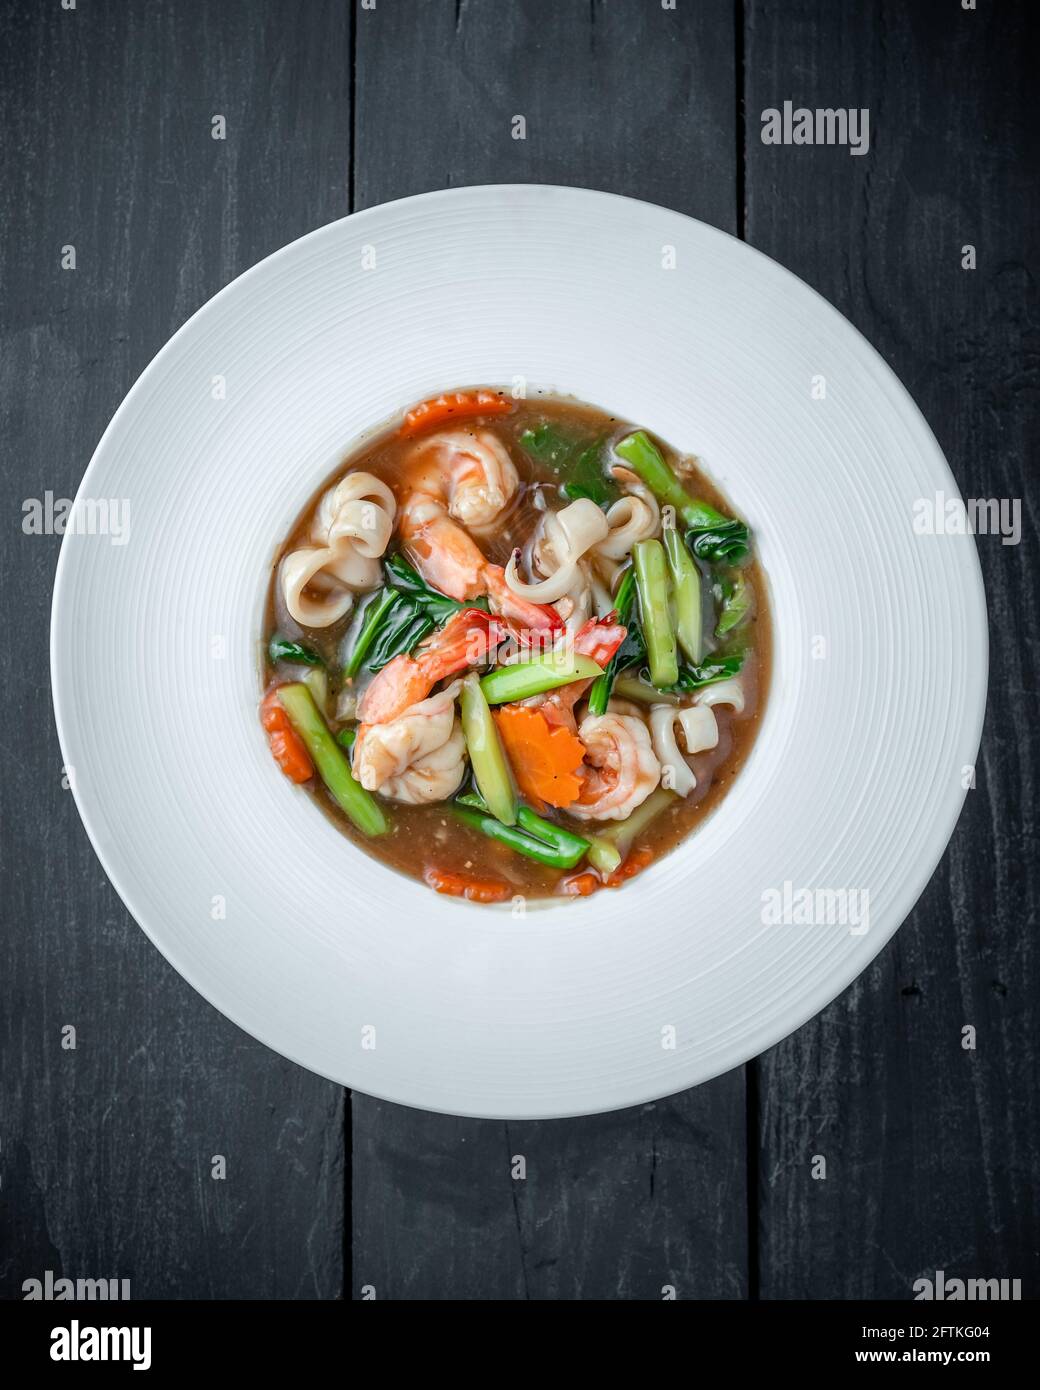 Ein Gericht aus Thai Ratte Na Noodle mit Meeresfrüchten, chinesischem Broccoli und dickerter Sauce Stockfoto